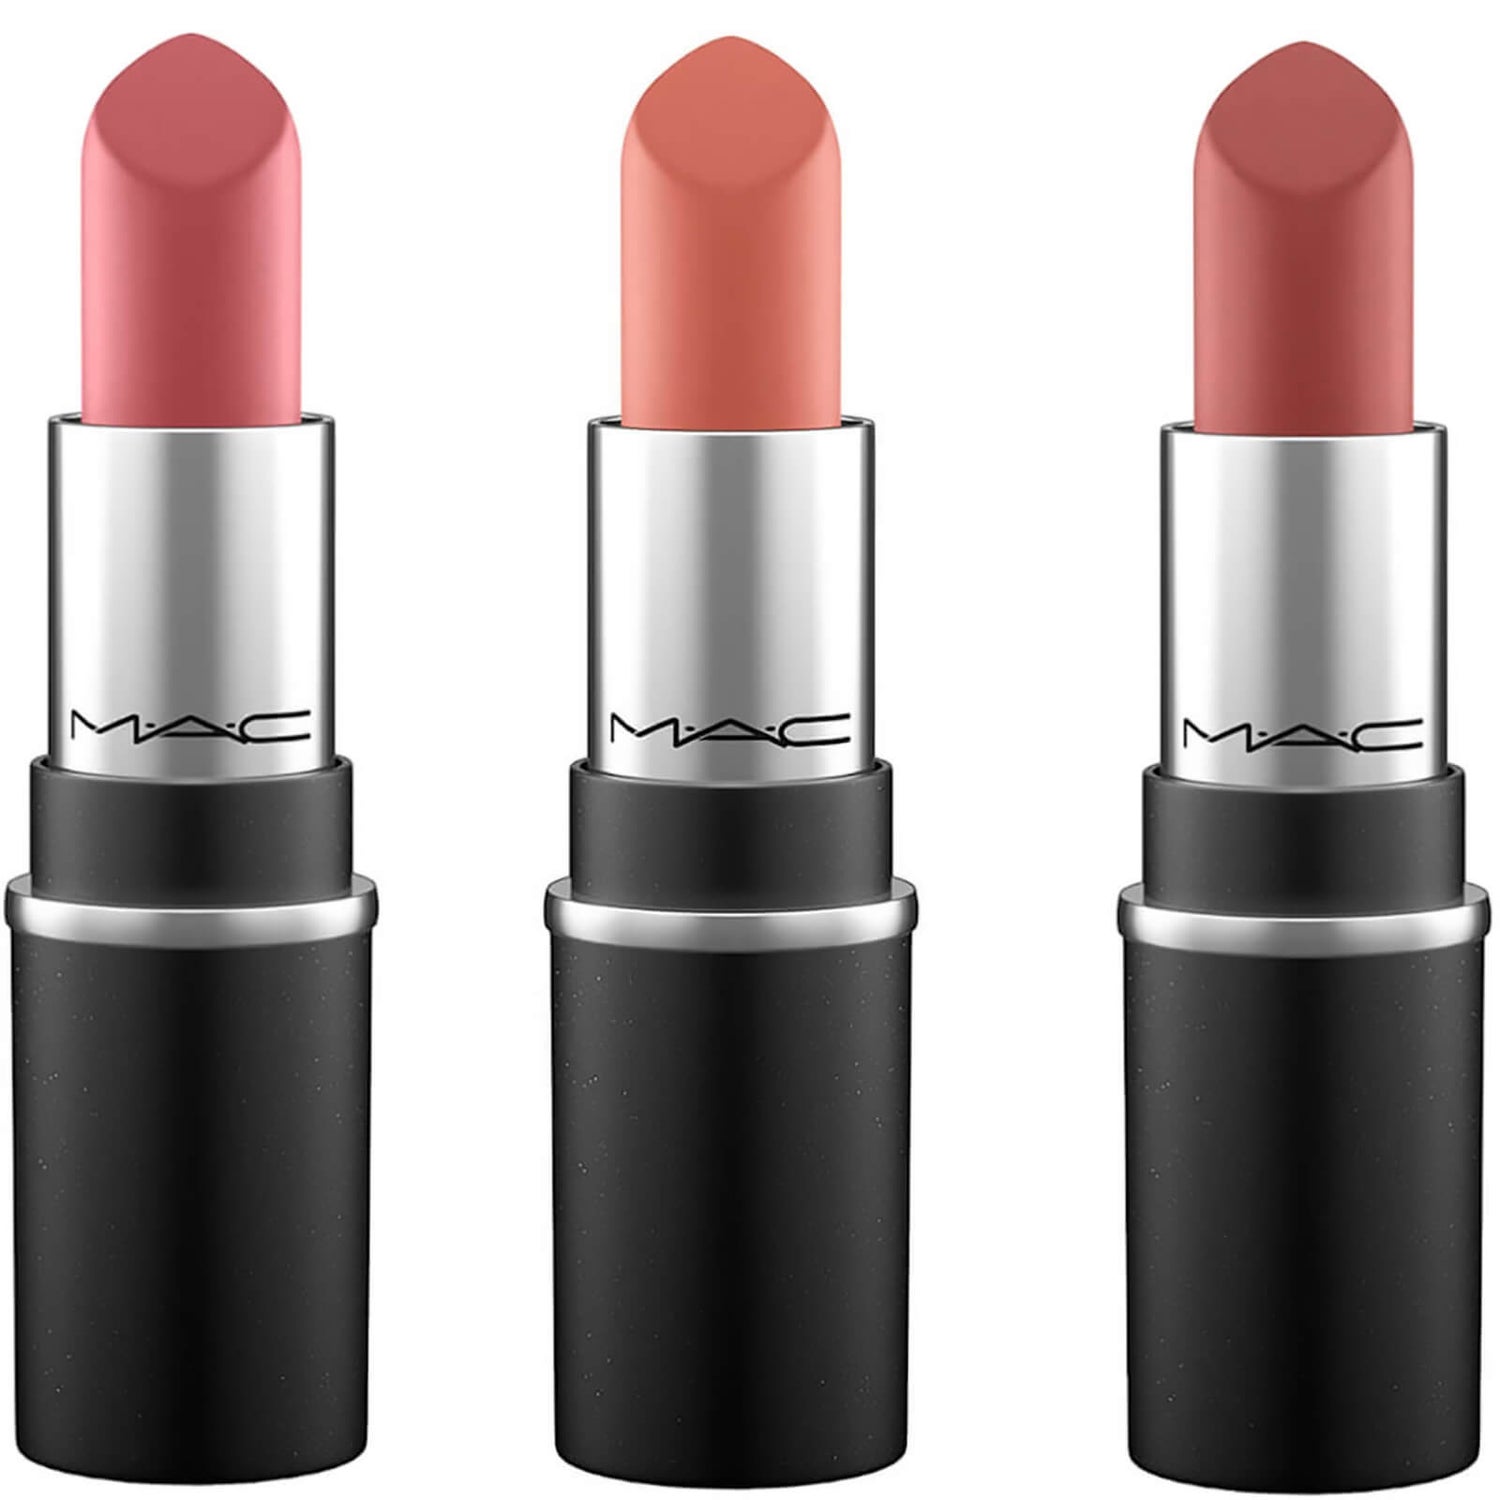 MAC Mini Nude Lipstick Trio